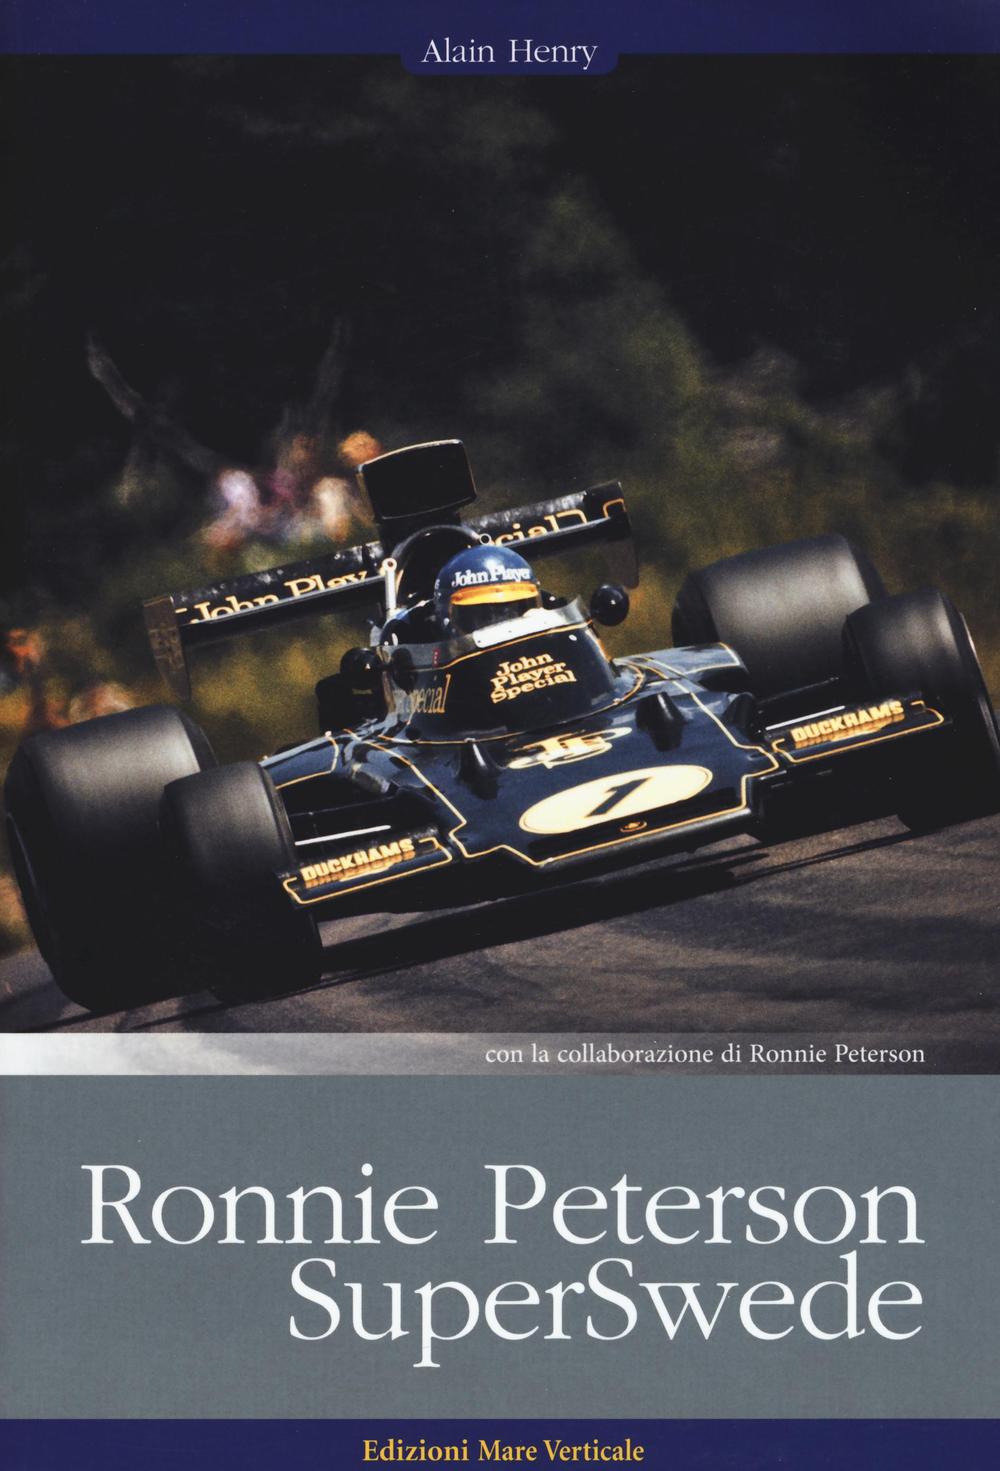 Libri Alain Henry / Ronnie Peterson - Ronnie Peterson. Superswede NUOVO SIGILLATO, EDIZIONE DEL 21/07/2016 SUBITO DISPONIBILE